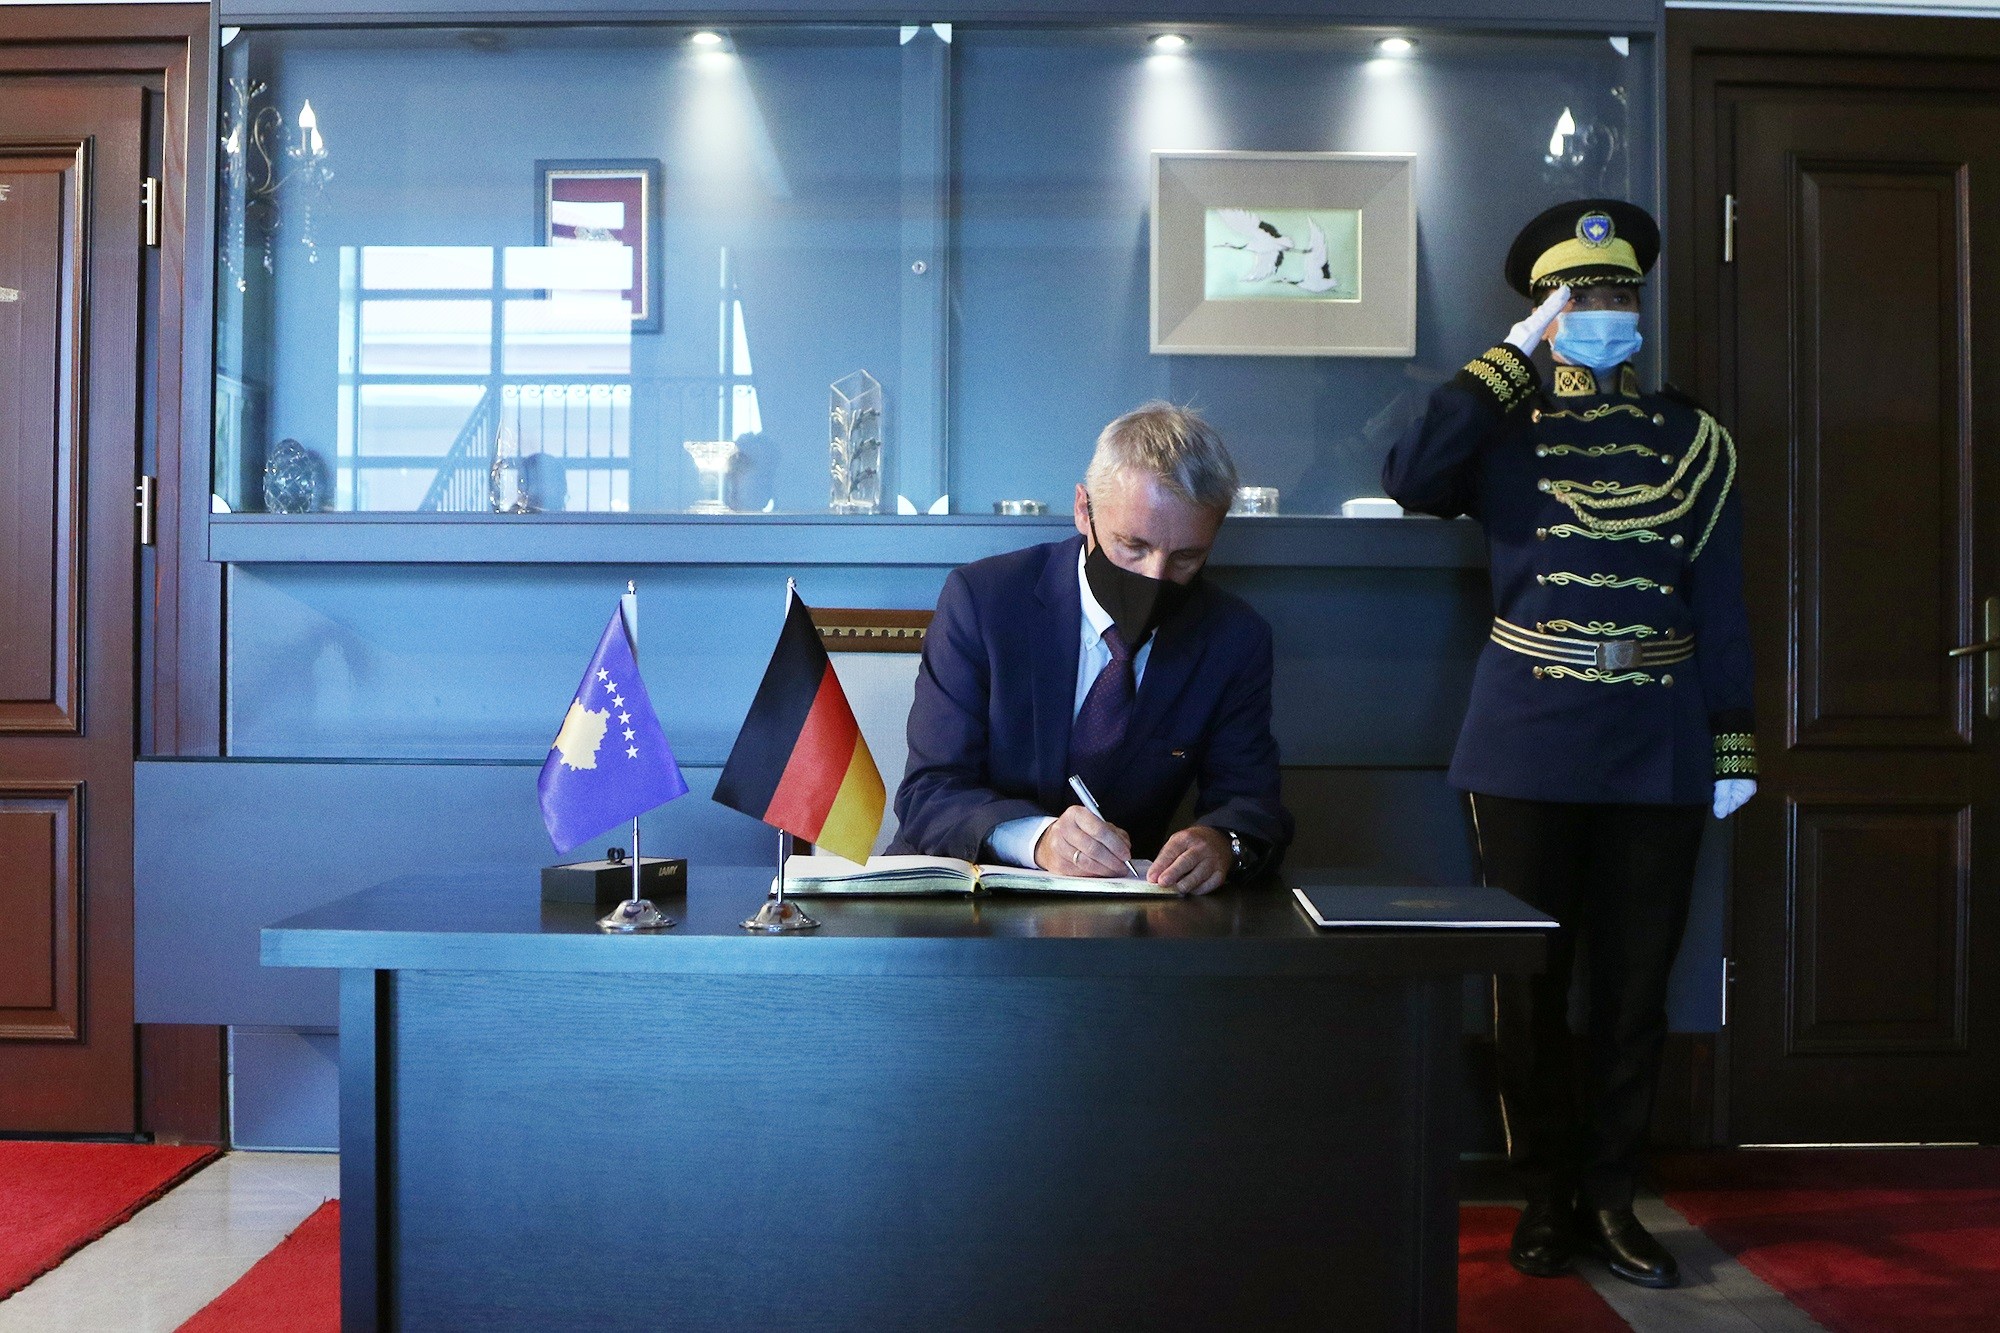 Presidenti Thaçi pranoi letrat kredenciale nga ambasadori i ri i Gjermanisë